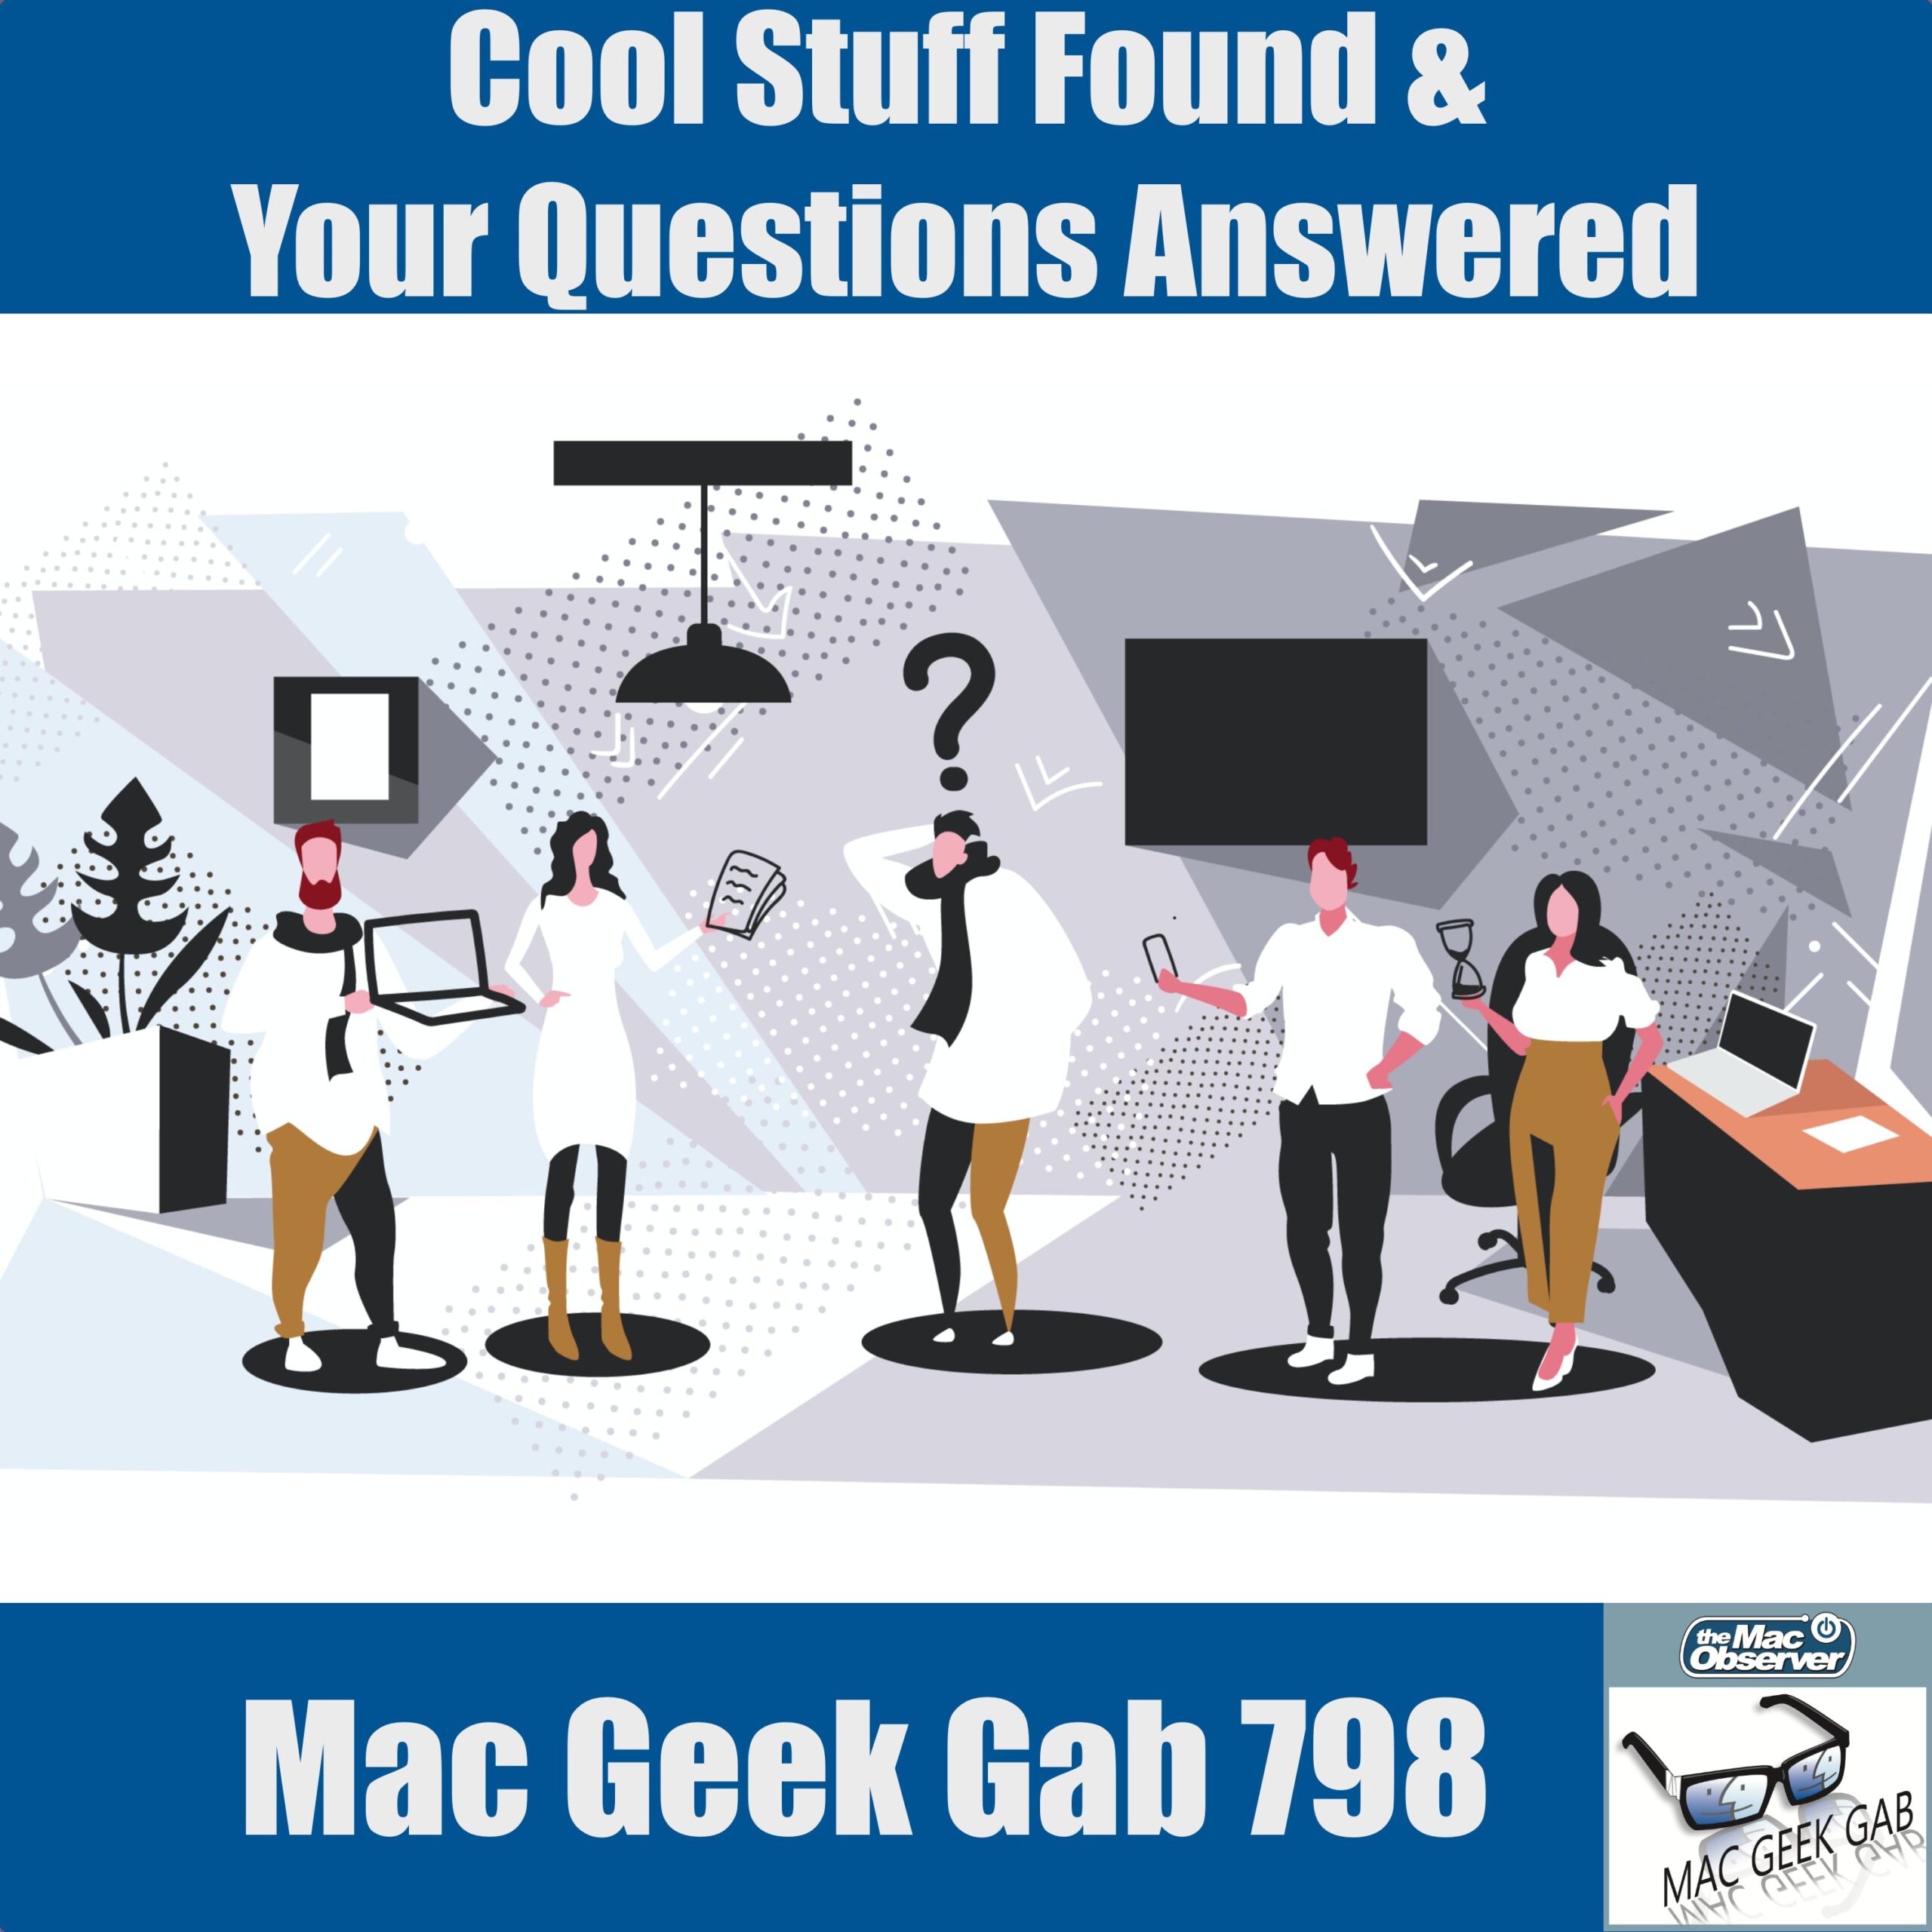 Se encontraron cosas interesantes y sus preguntas fueron respondidas - Mac Geek Gab 798